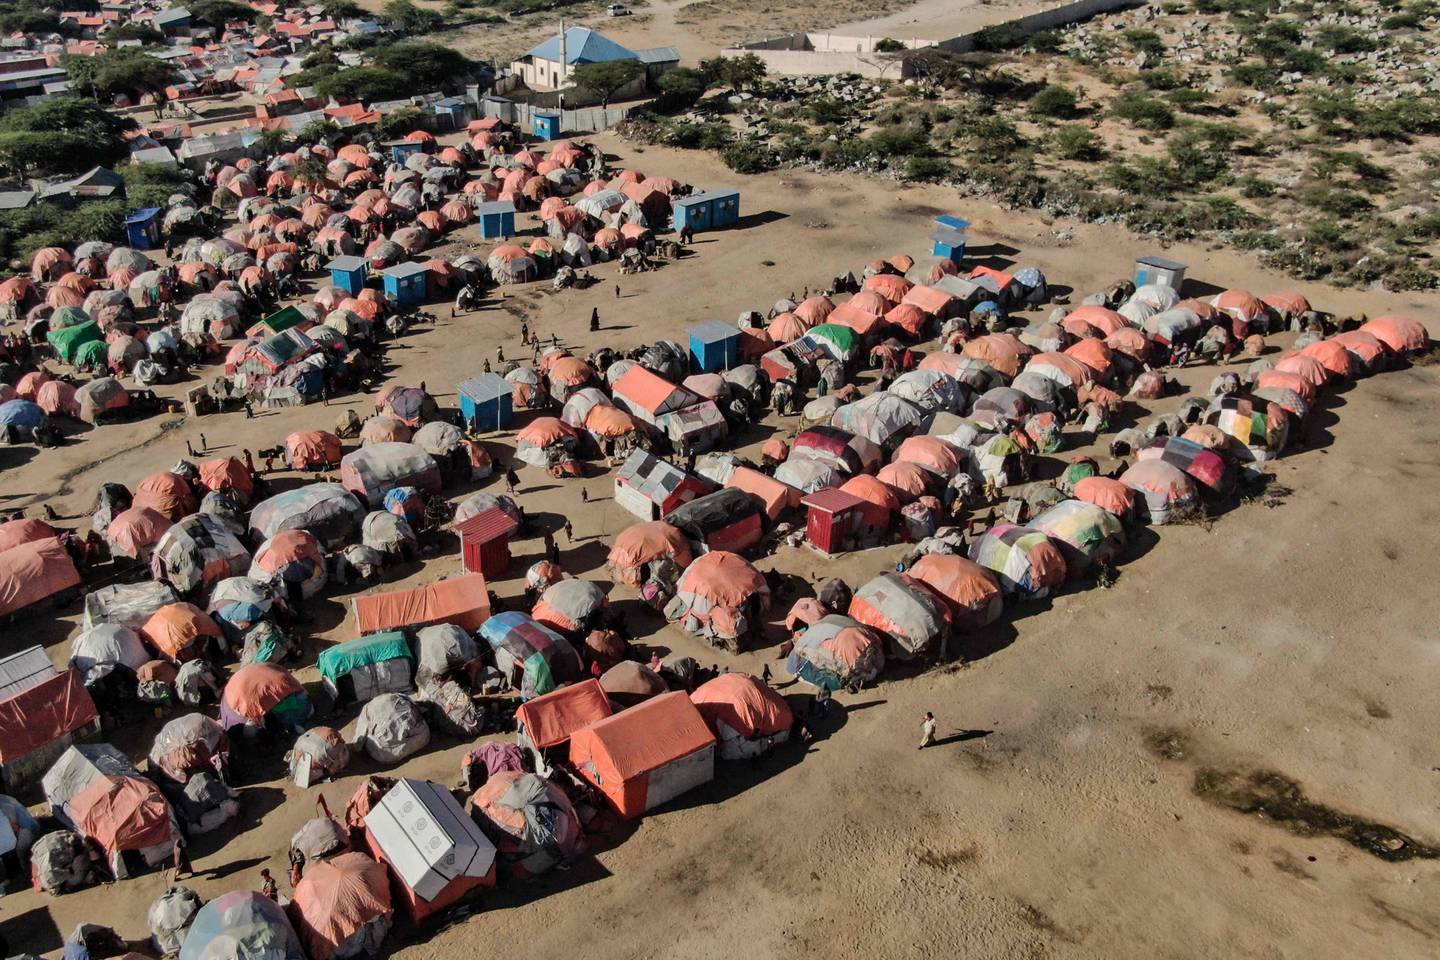 Stadig flere flykter fra konsekvenser av klimaendringer, og problemet er ventet å øke. Her er en midlertidig leir i Mogadishu i Somalia, der folk har måttet flykte på grunn av tørke.